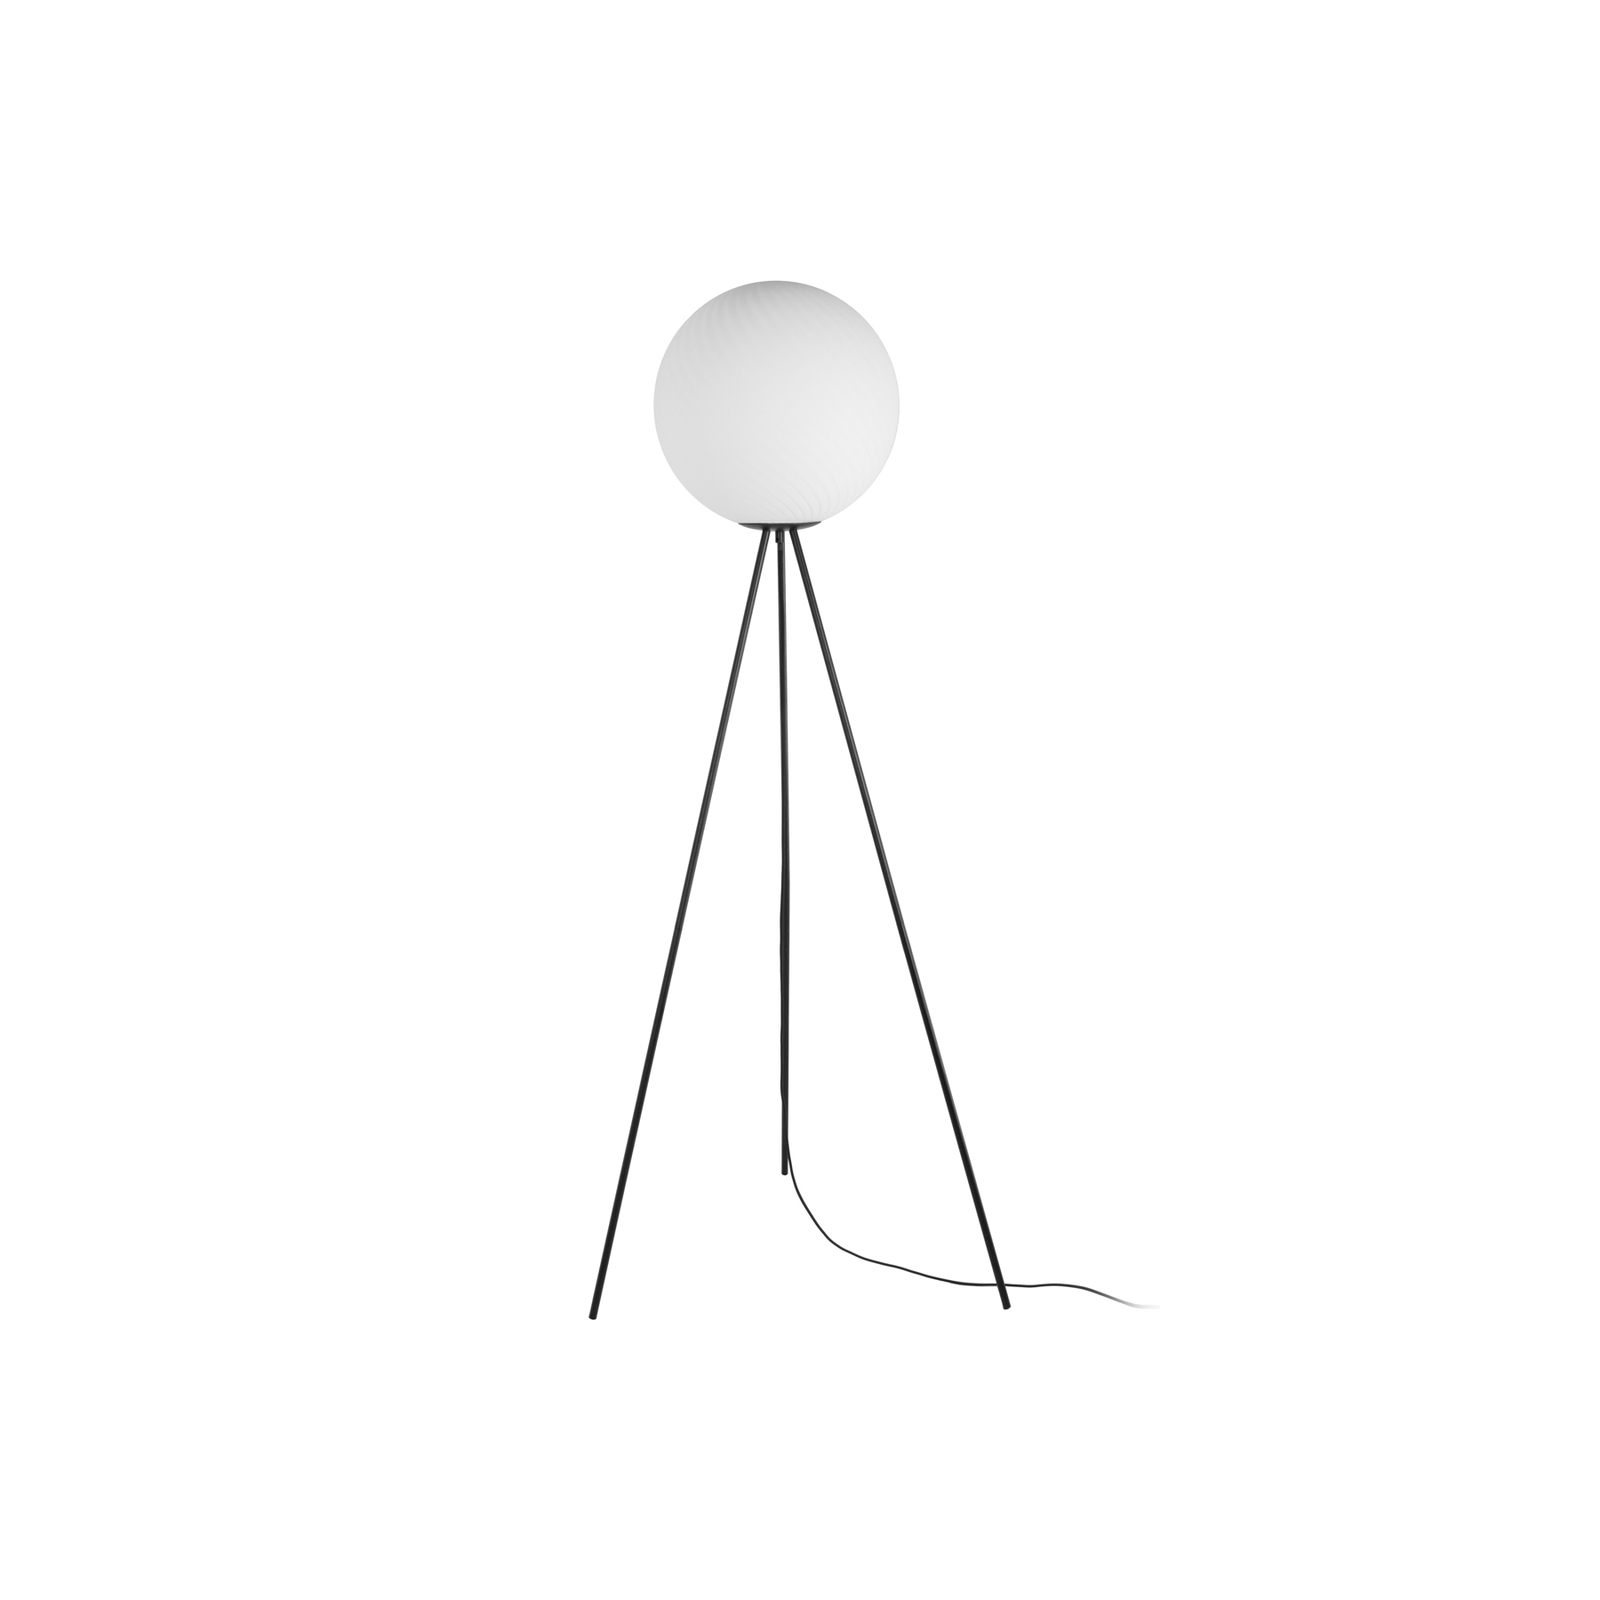 Lampa stojąca Lucande Kestralia, biały, szkło, Ø 35 cm, E27